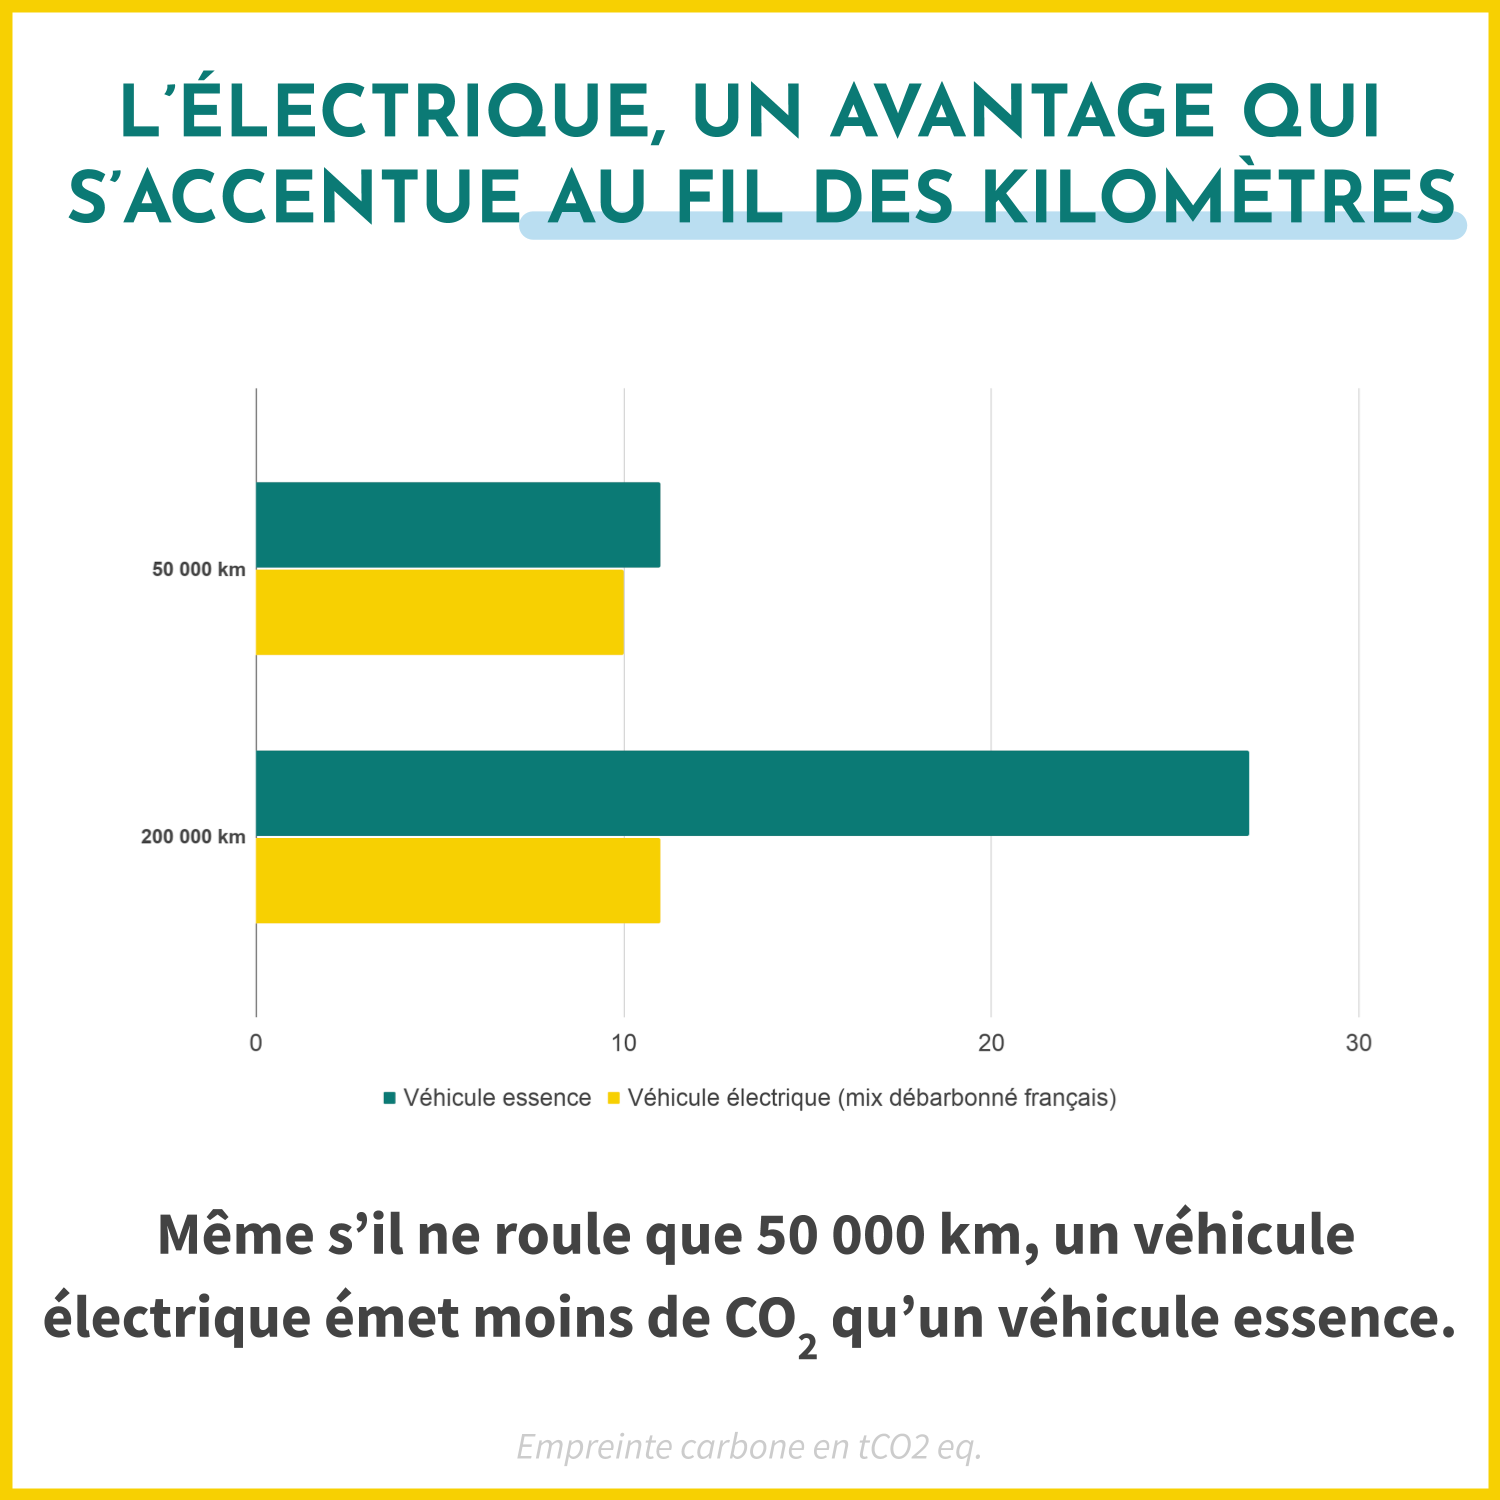 Même s'il ne roule que 50 000 km, un véhicule électrique émet moins de CO2 qu'un véhicule essence. 